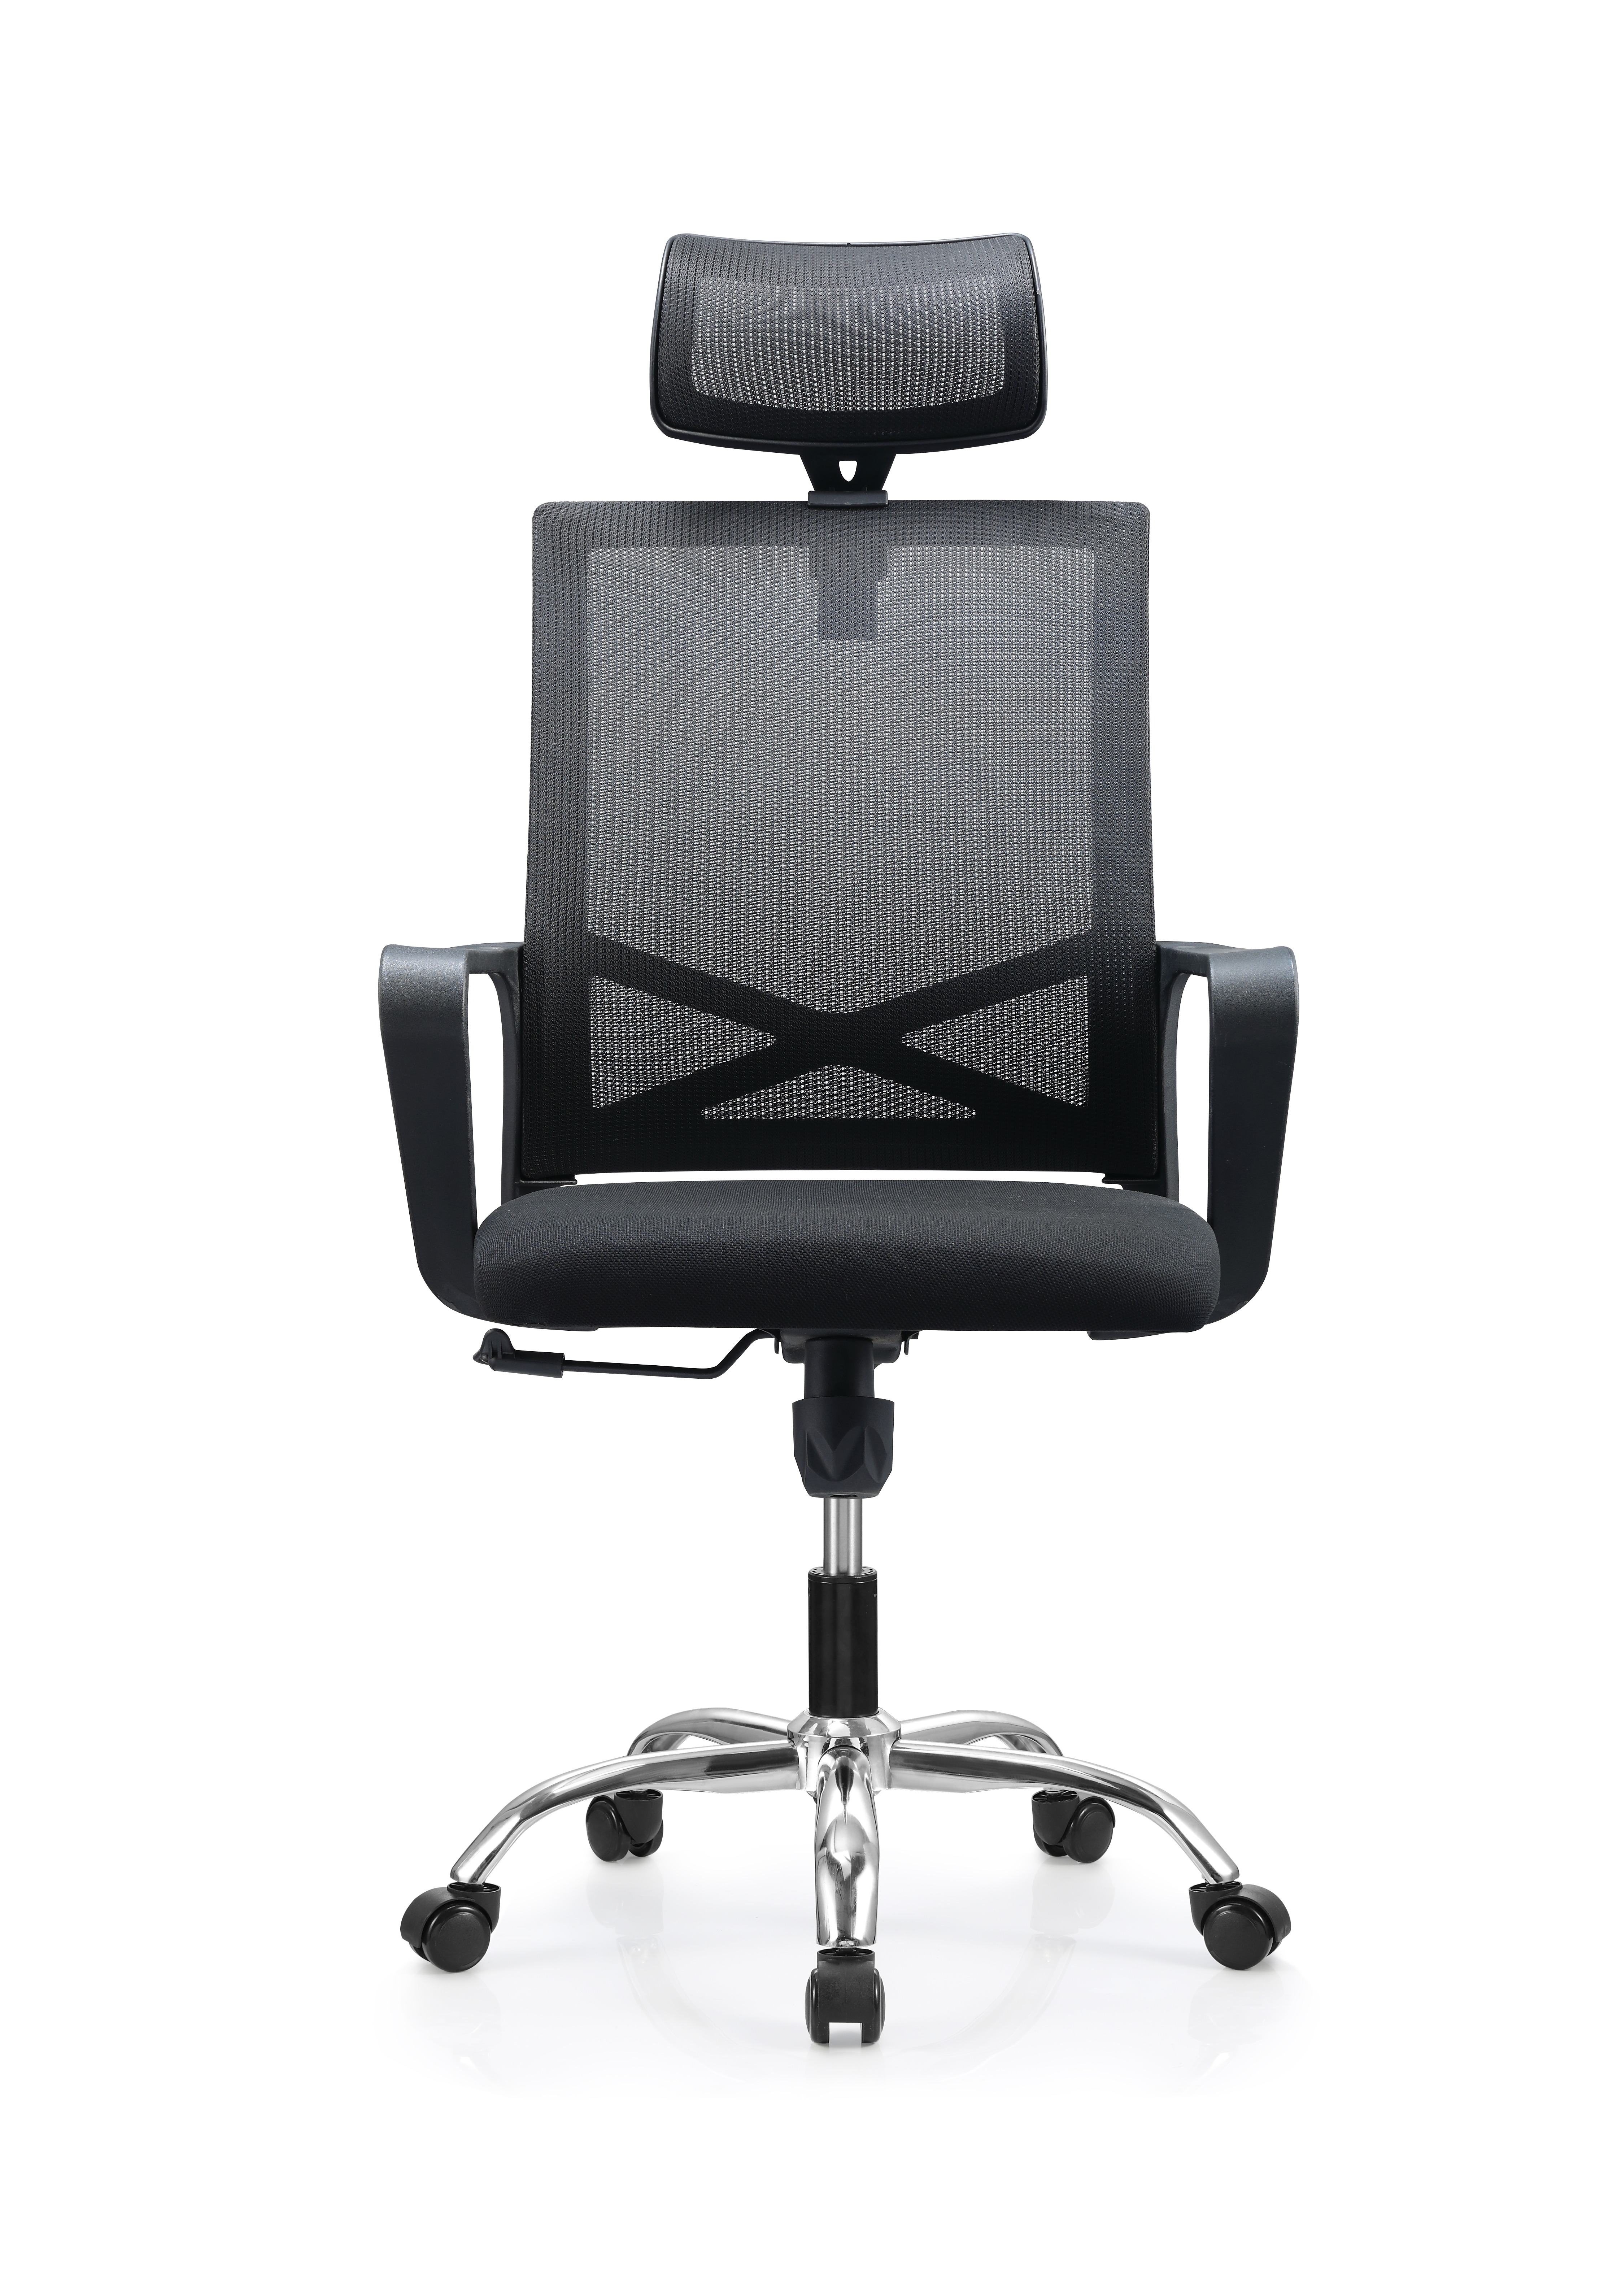 Newcity 552A Мебель современного дизайна Индивидуальное сетчатое кресло с высокой спинкой Регулируемый подголовник Офисное кресло с сеткой для руководителей Хорошая цена Поставщик современных сетчатых стульев Фошань, Китай